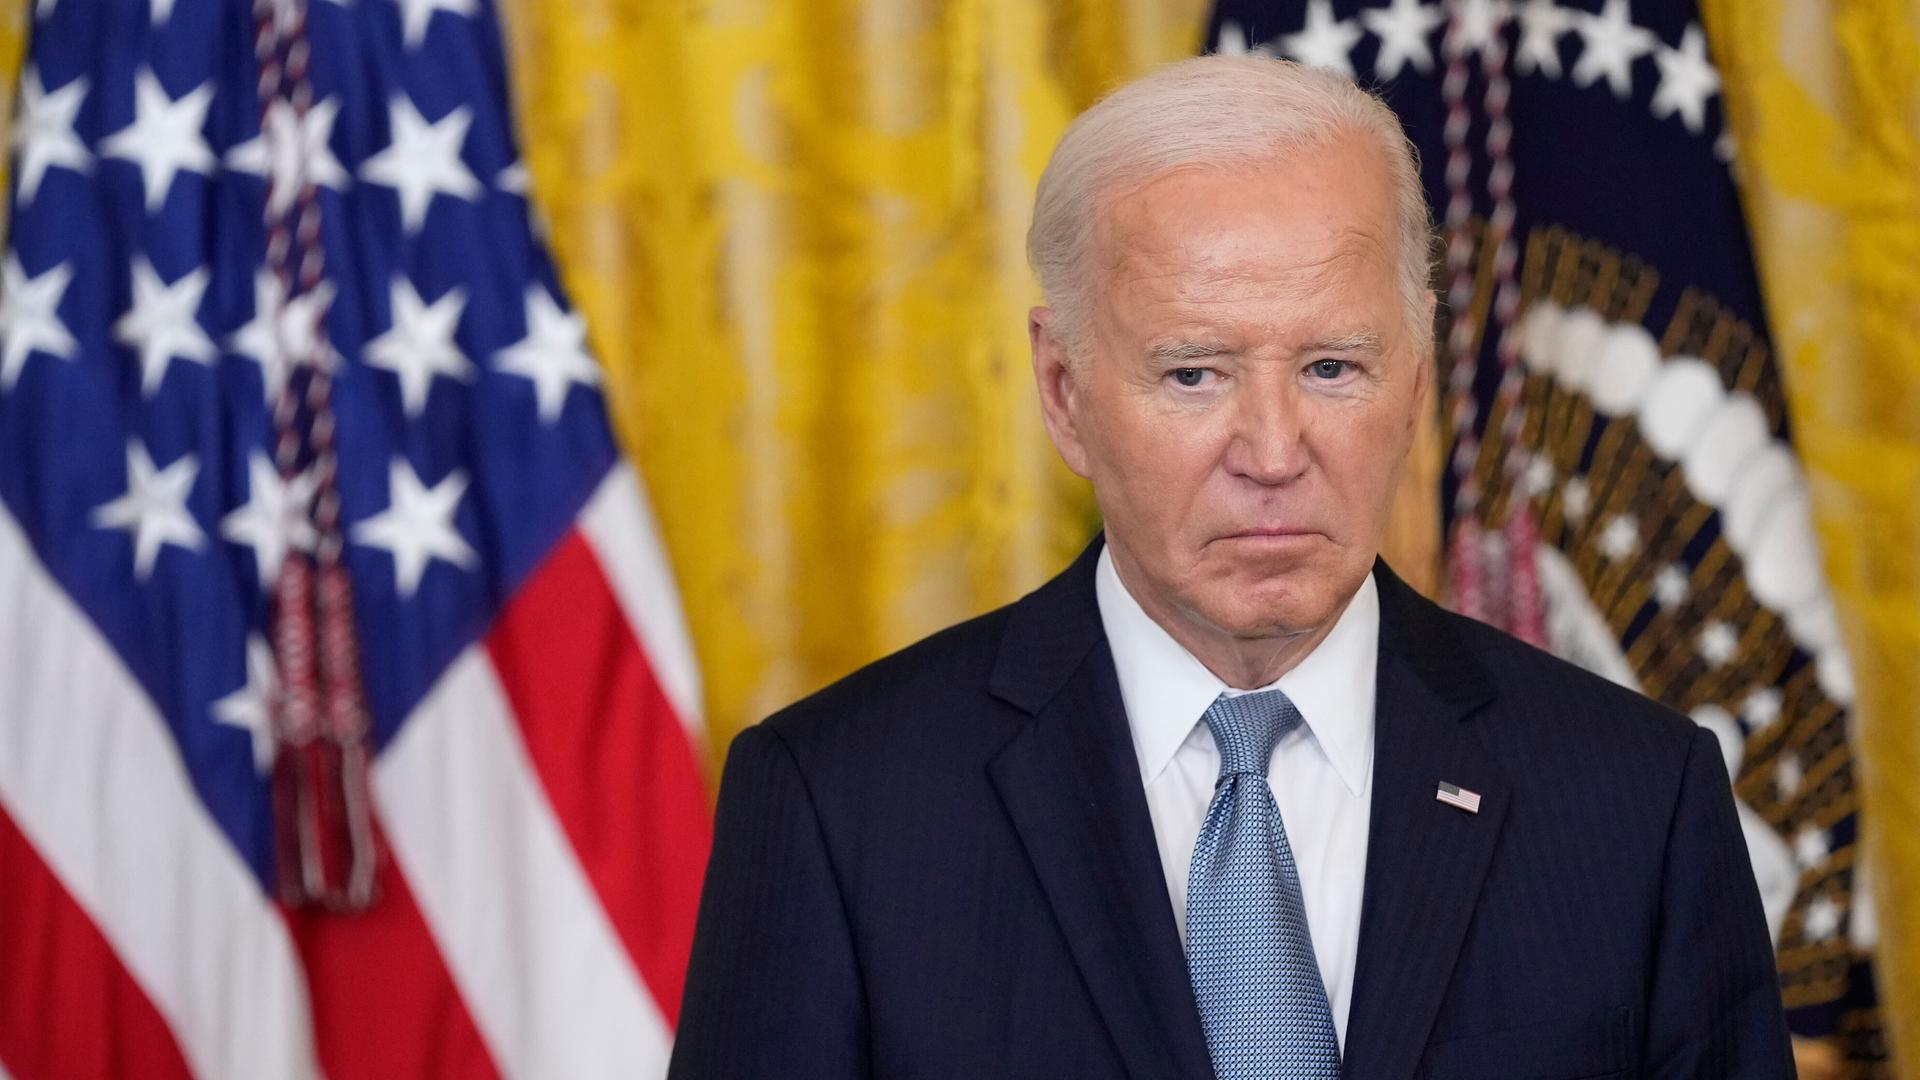 US-Präsident Joe Biden hört während der Verleihung einer Ehrenmedaille im Weißen Haus einer Rede zu. 